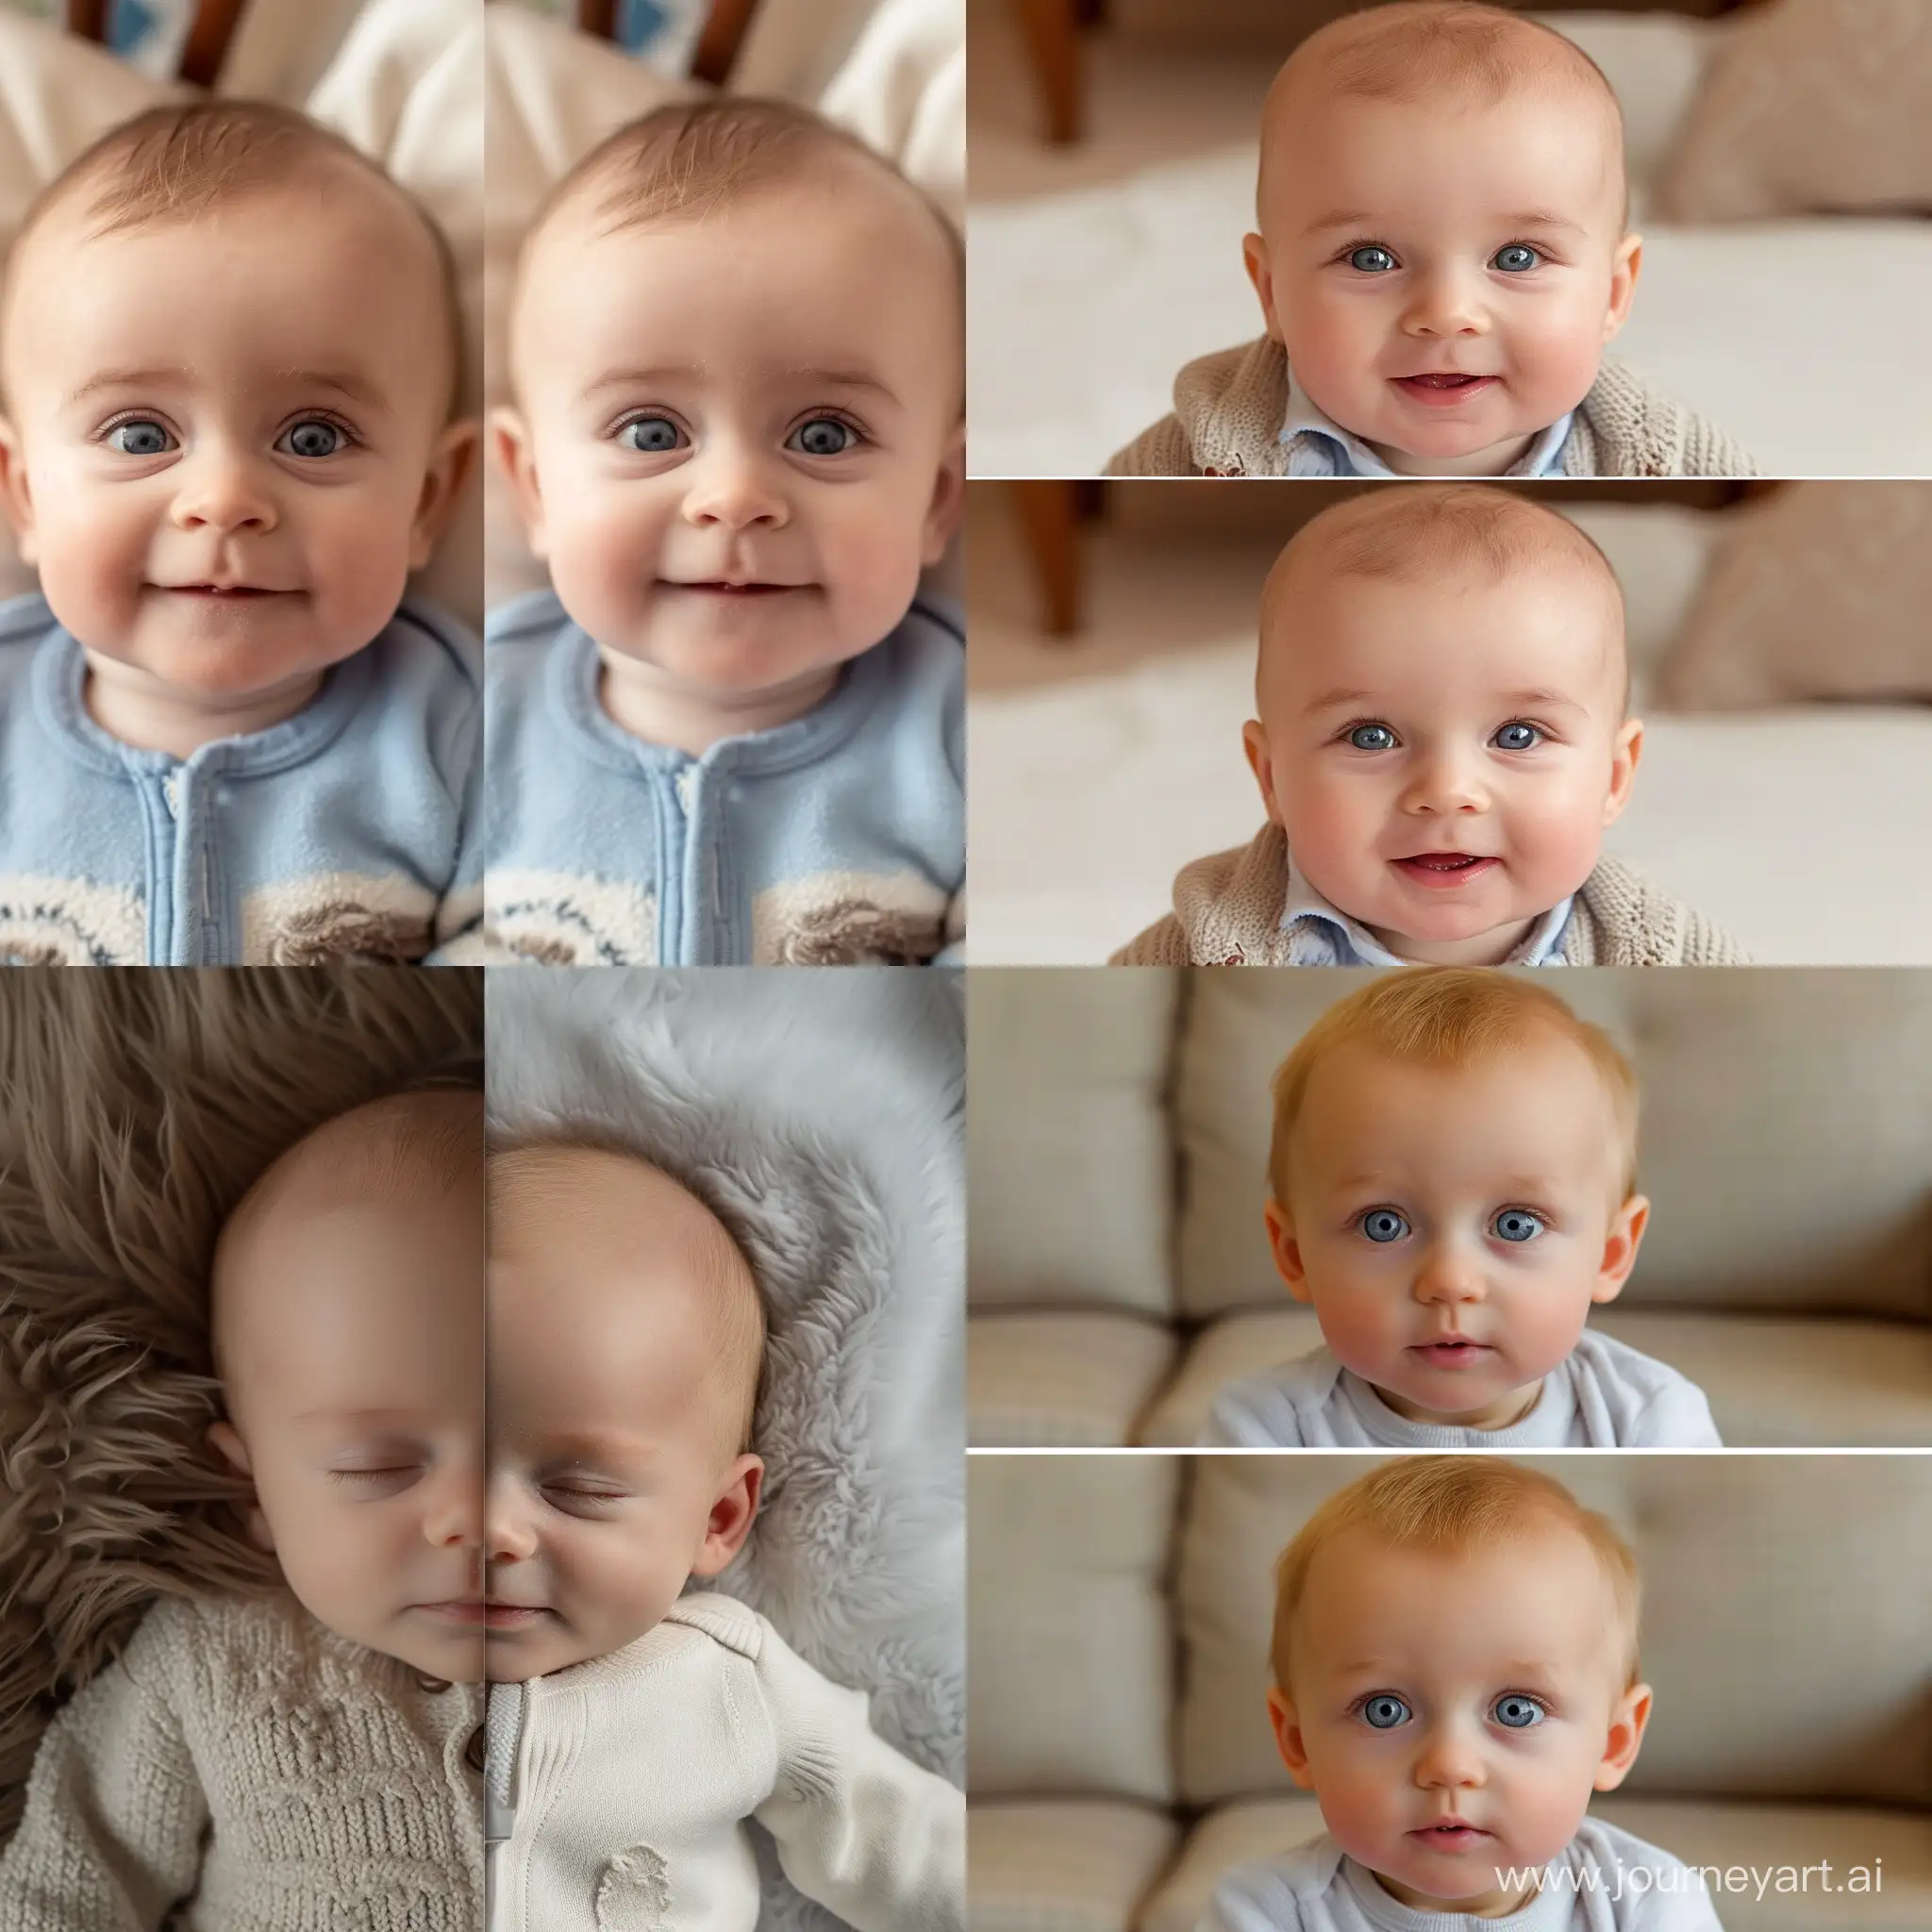 اجازه بده من یک عکس نوزاد آپلود کنم و صورت او را روی عکس دیگری از بچه قرار ده